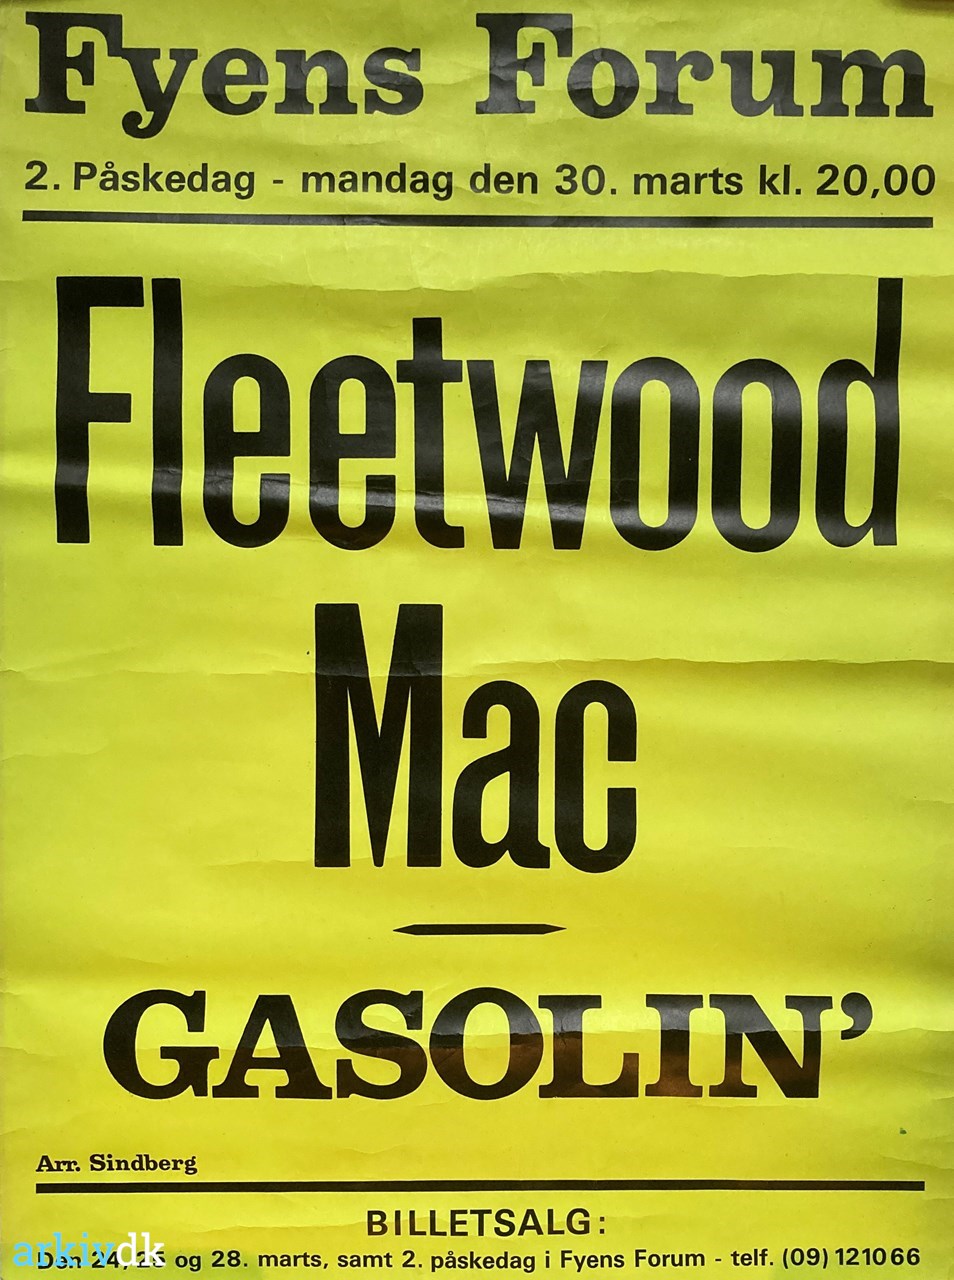 arkiv.dk | Koncertplakat for koncert med Fleetwood Mac Gasolin' 30/3 1971 i Fyns forum